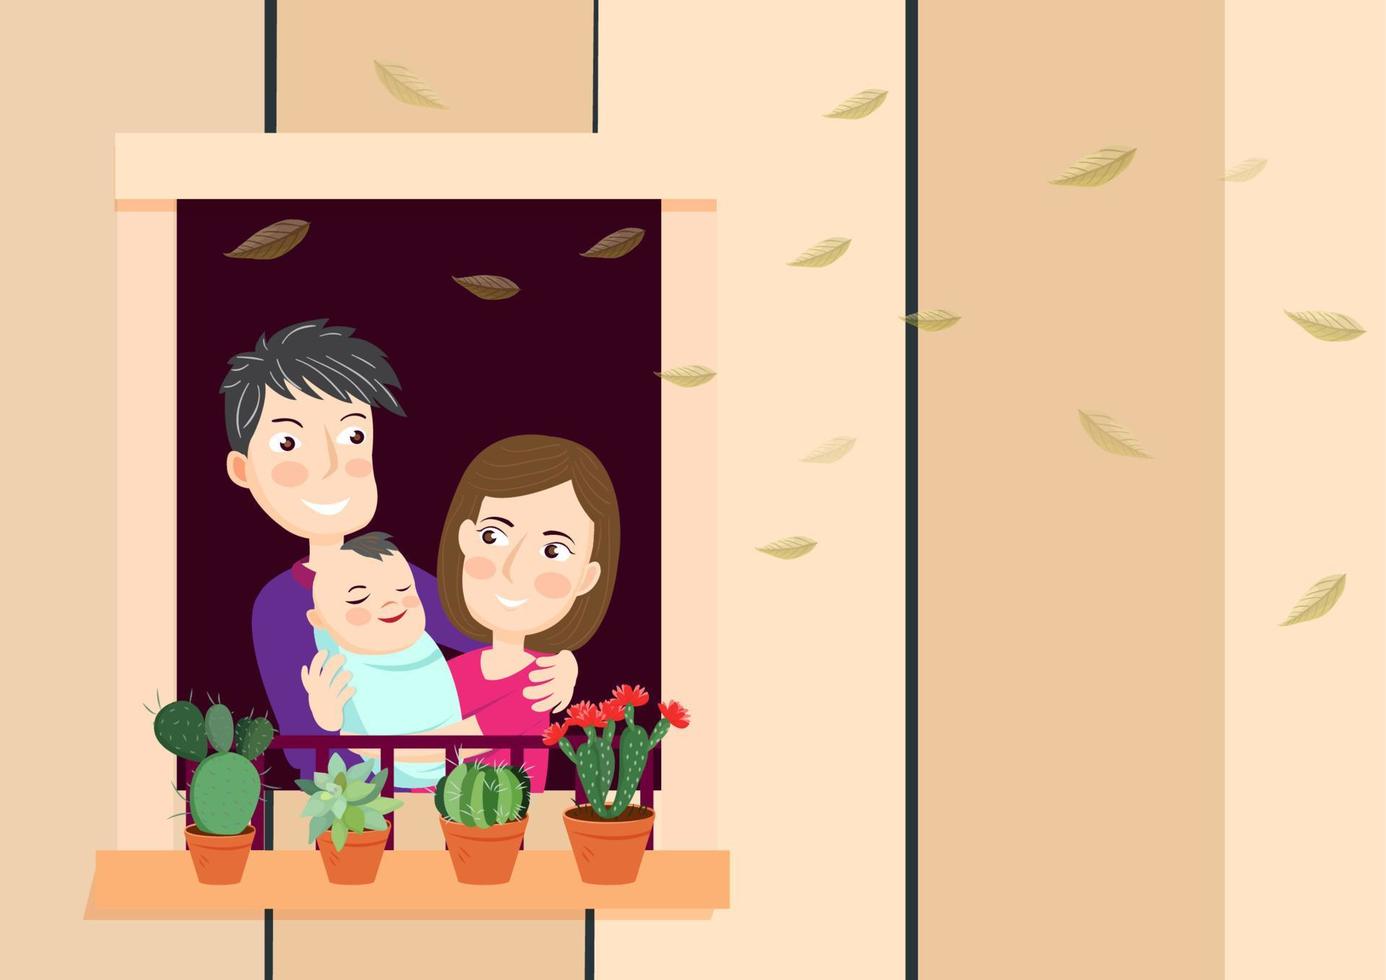 manténgase cómodo en una cálida caricatura de vector de casa vintage con la pareja joven y su hijo pequeño abrazándose y relajándose en la veranda de una casa de madera. vector de ilustración de dibujos animados de estilo plano